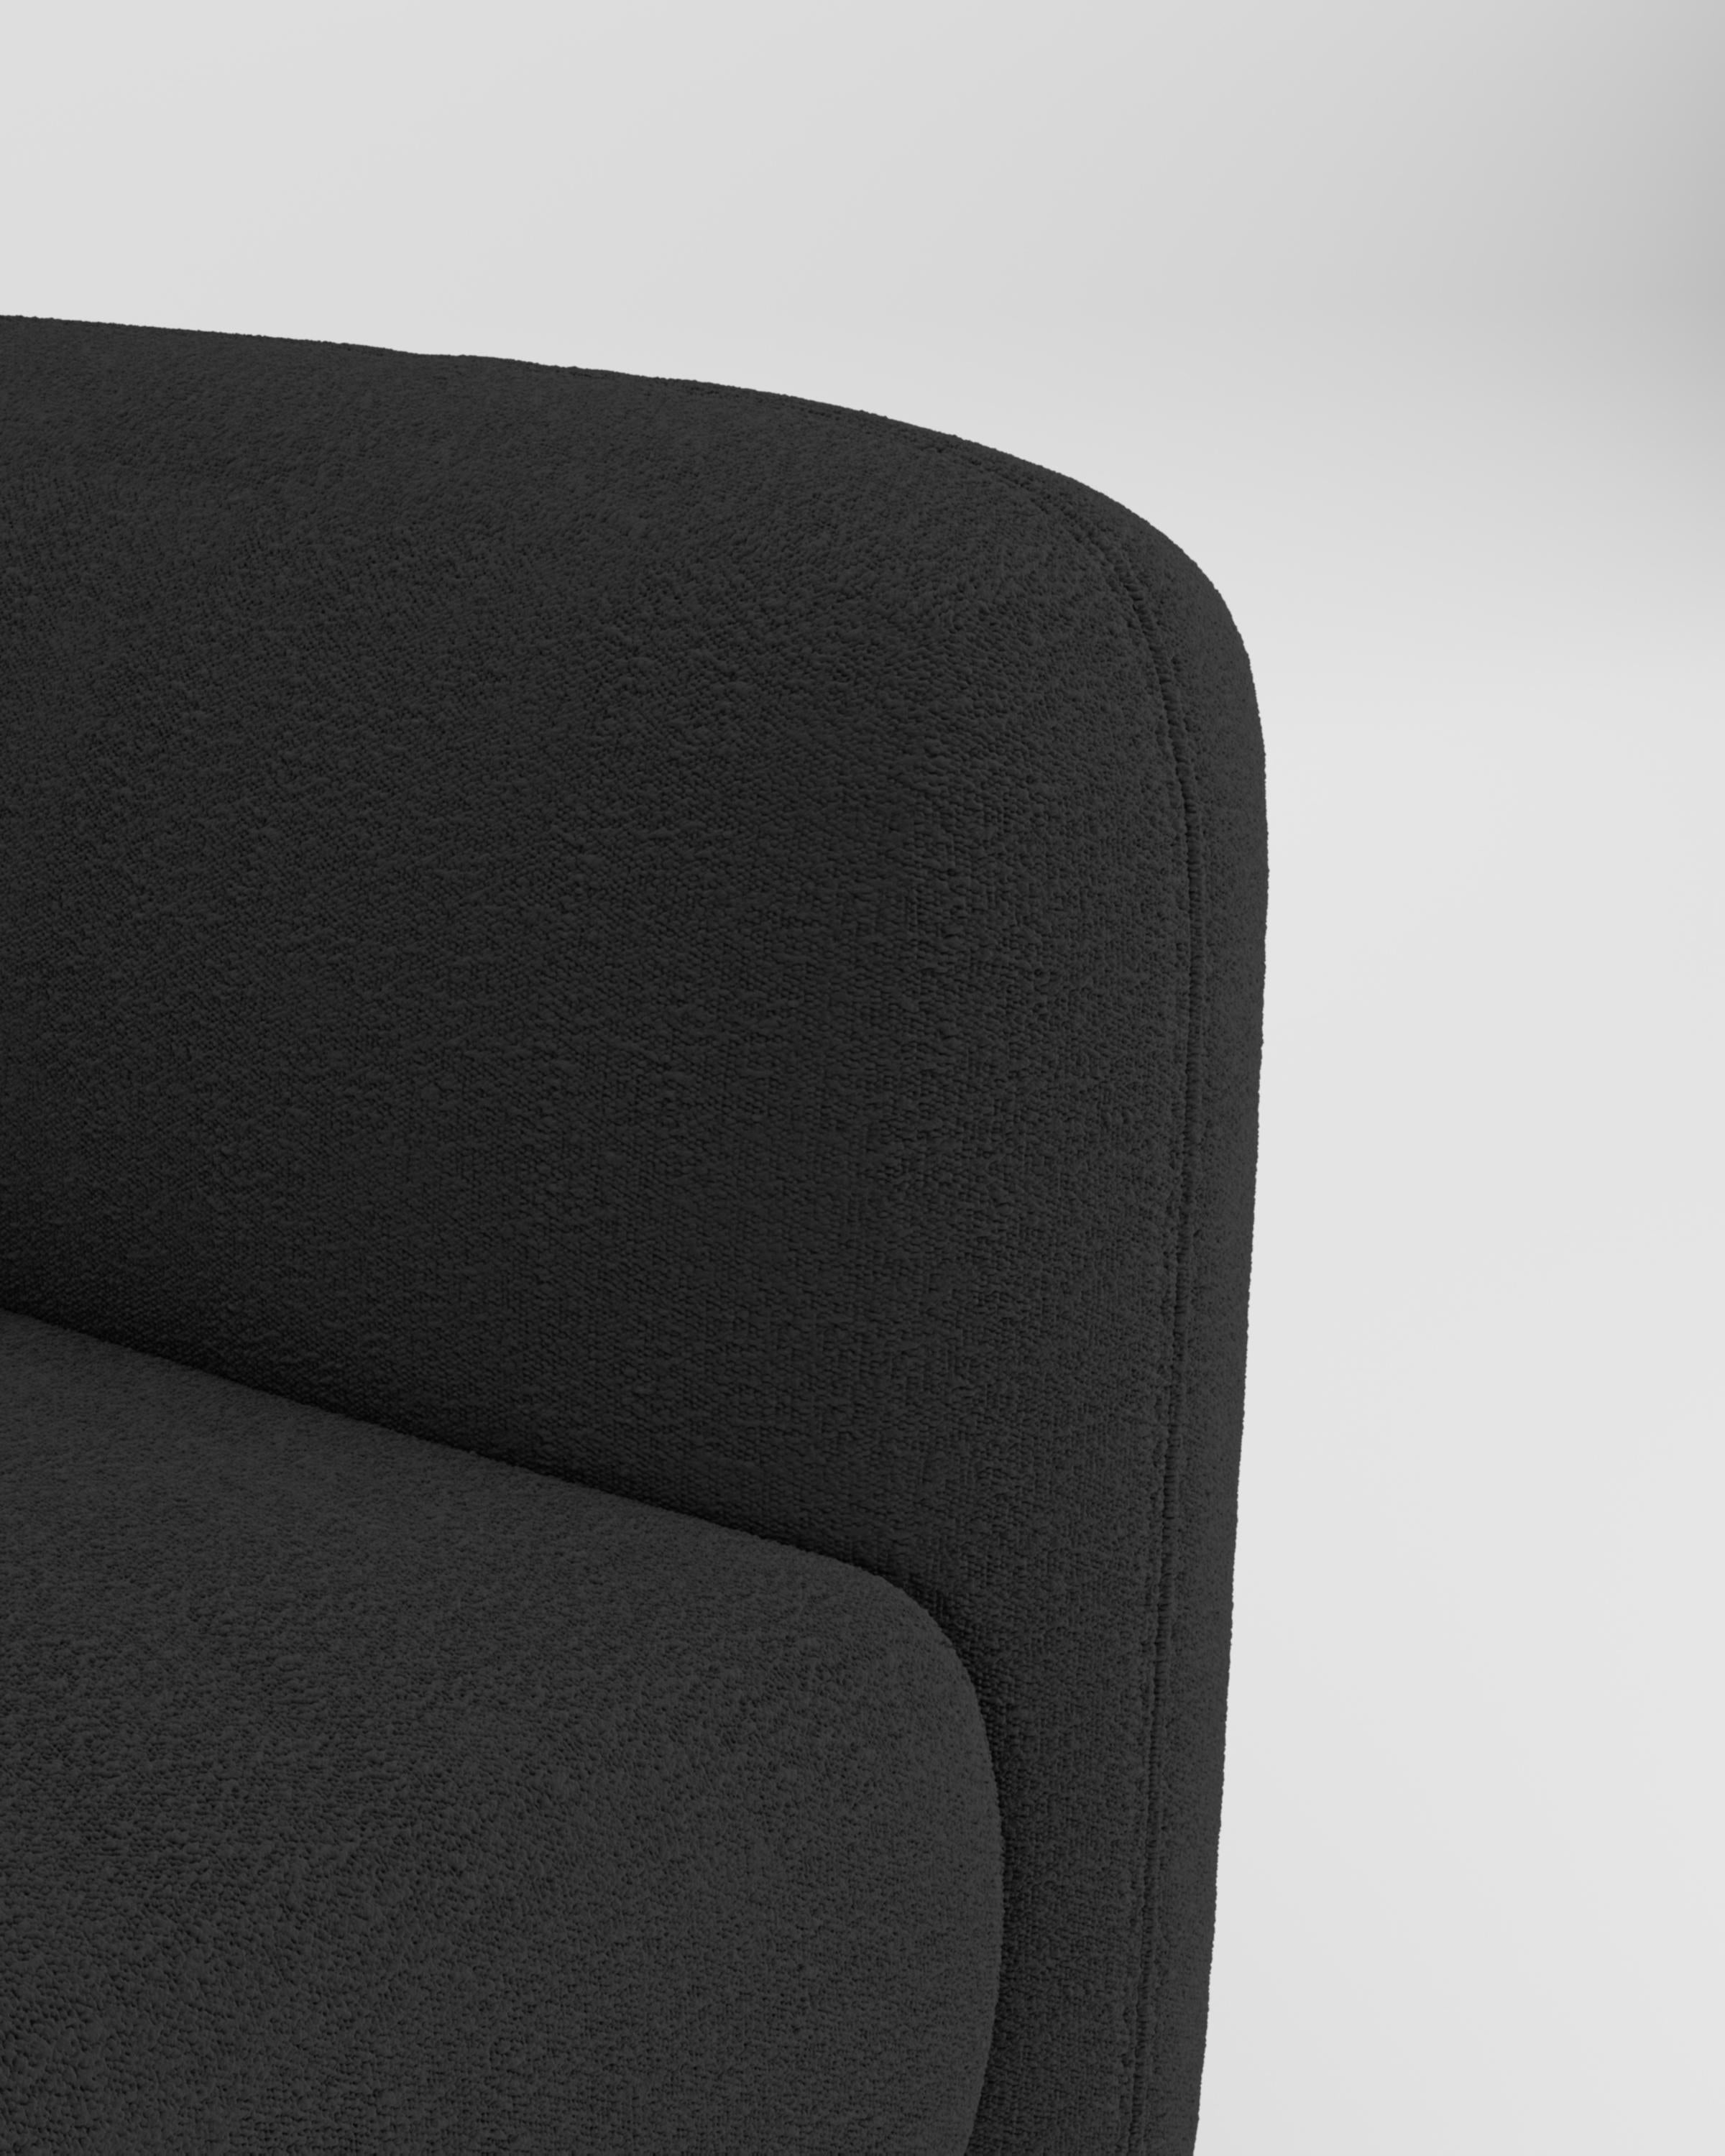 Dieser witzige und raffinierte Sessel des 21. Jahrhunderts, der von Collector Studio entworfen wurde, ist durch seine einfache Form und sein attraktives Farbspiel zusammen mit anderen möglichen Materialkombinationen stilistisch sehr vielseitig. Der